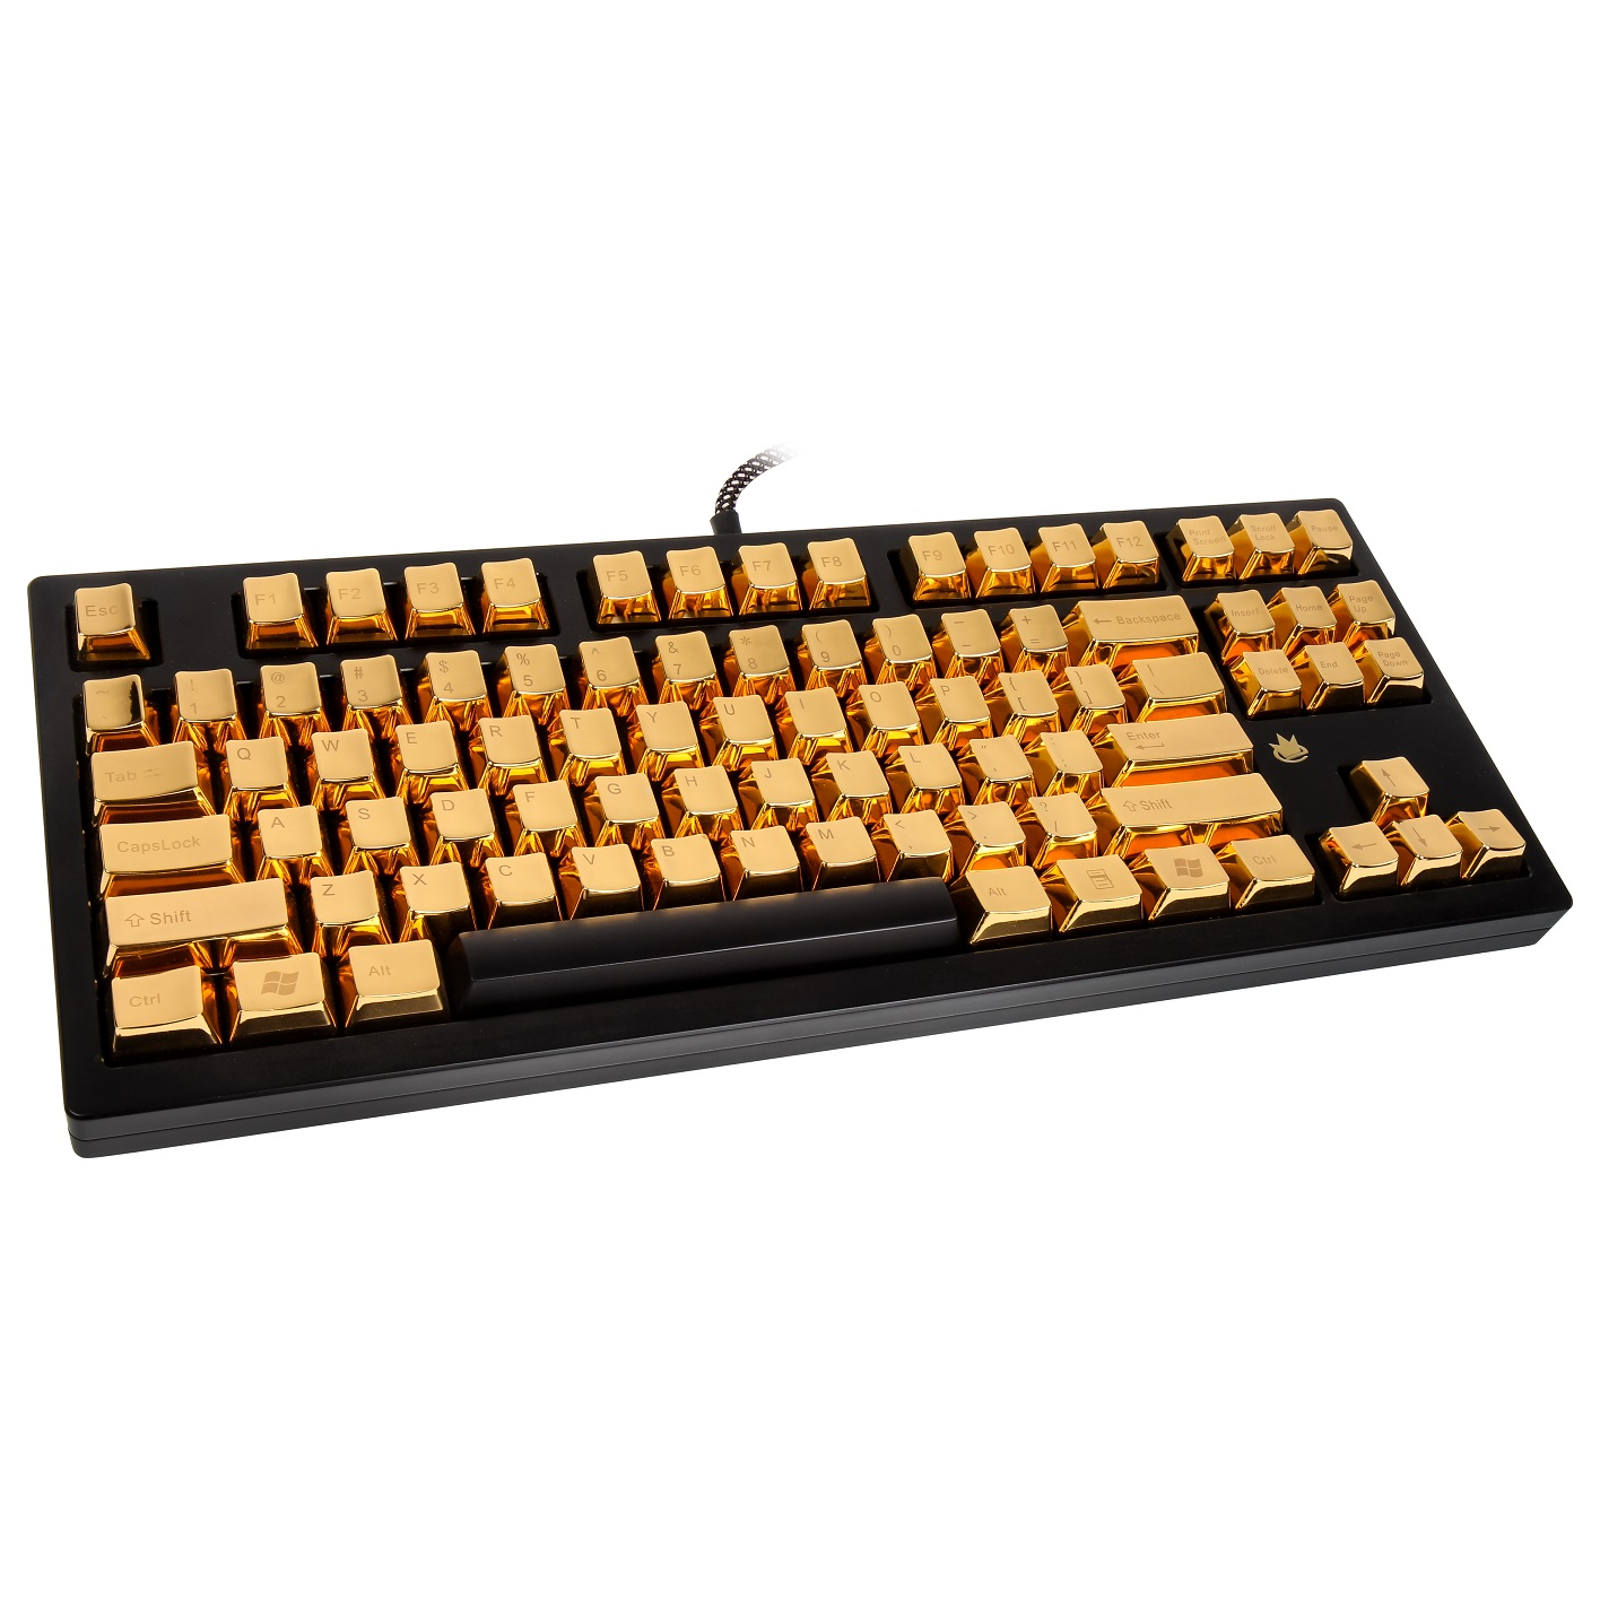 Caseking Golden Keyboard